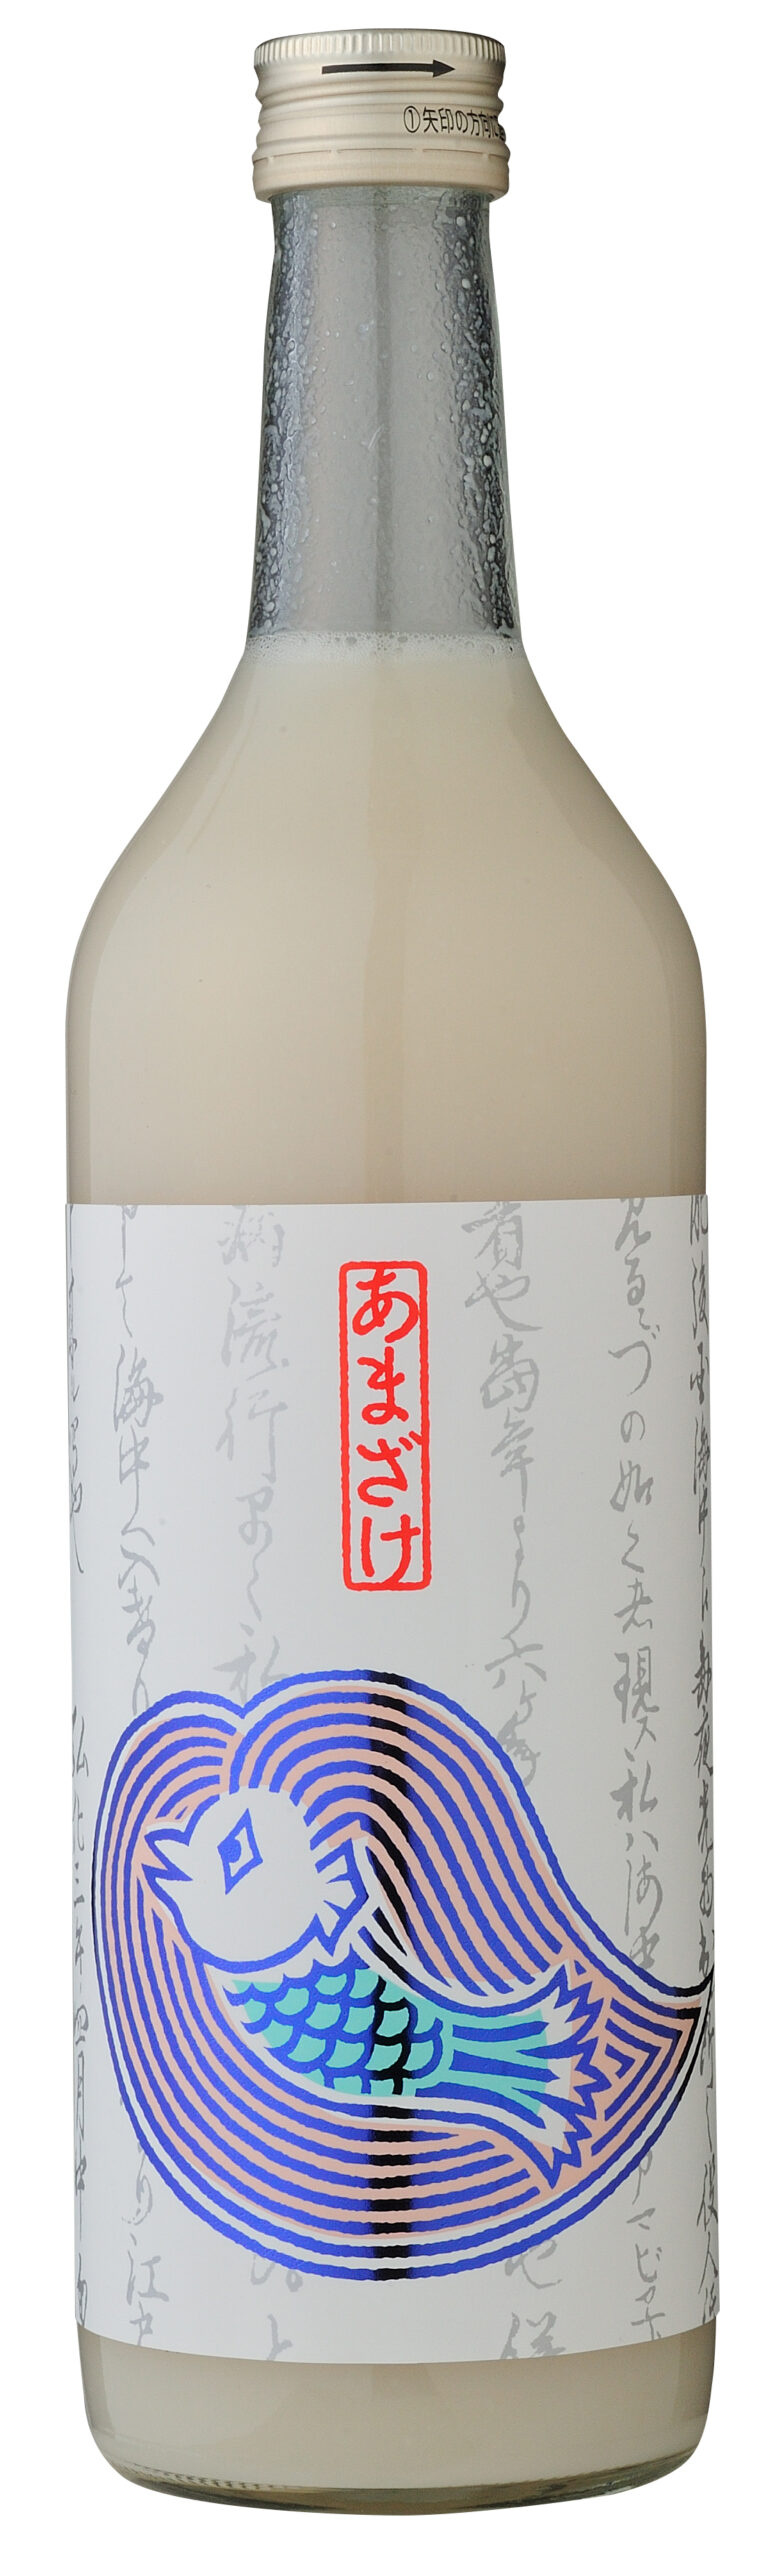 新型コロナウイルス感染症終息と健康を祈願しアマビエをラベルにあしらった日本酒と甘酒を販売開始